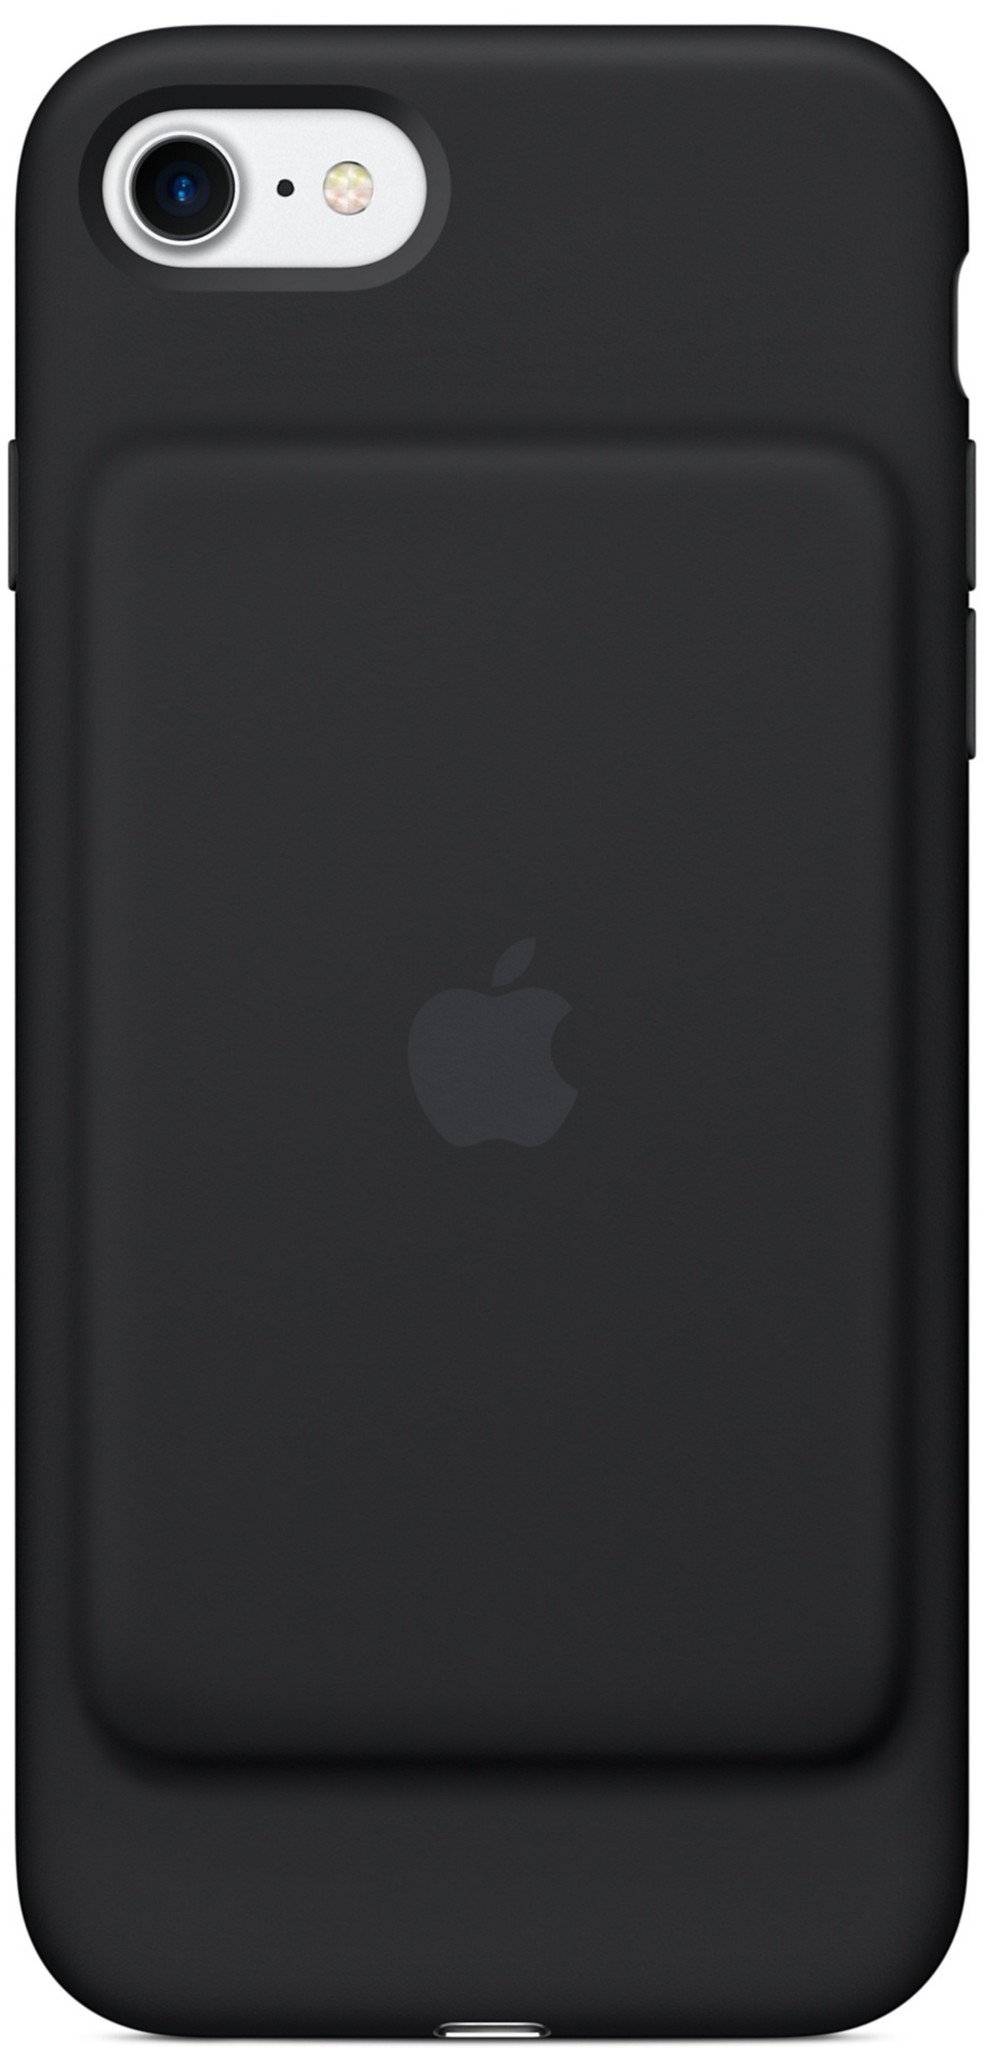 Apple Smart Battery Case